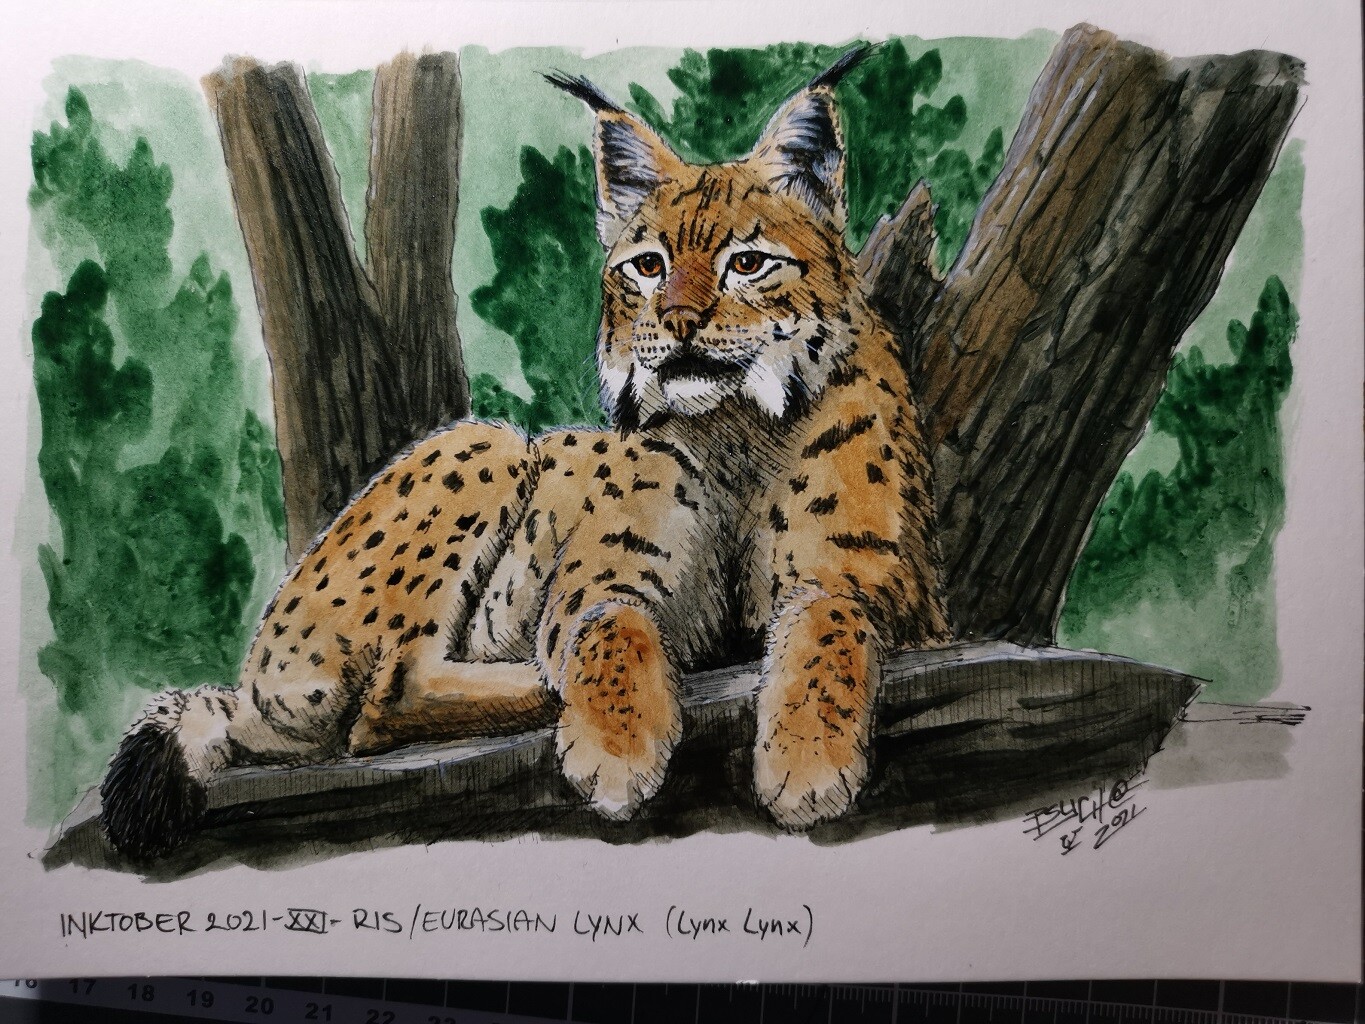 Ris/Eurasian Lynx (Lynx Lynx)